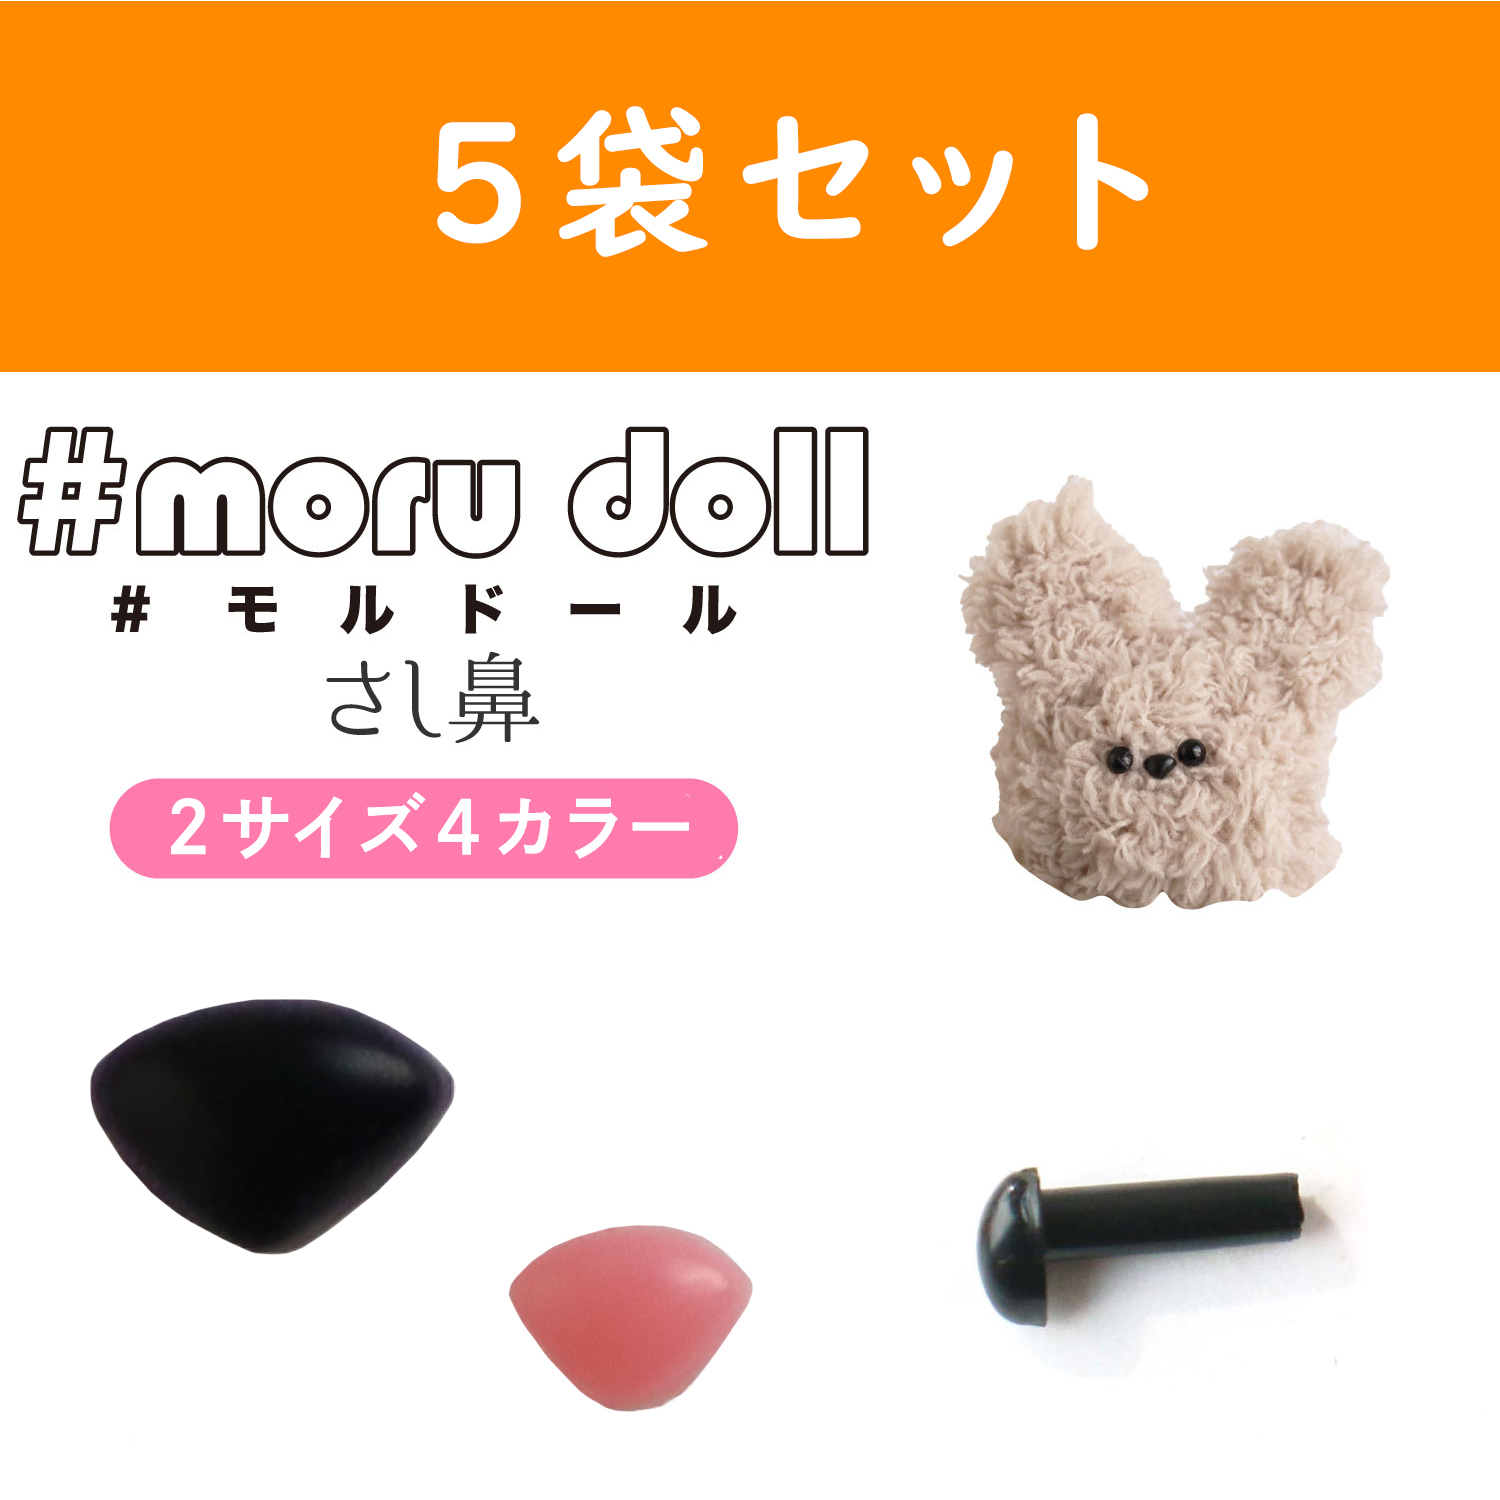 MOL-5 モール人形 モールドール さし鼻 10個入×5袋セット (セット)